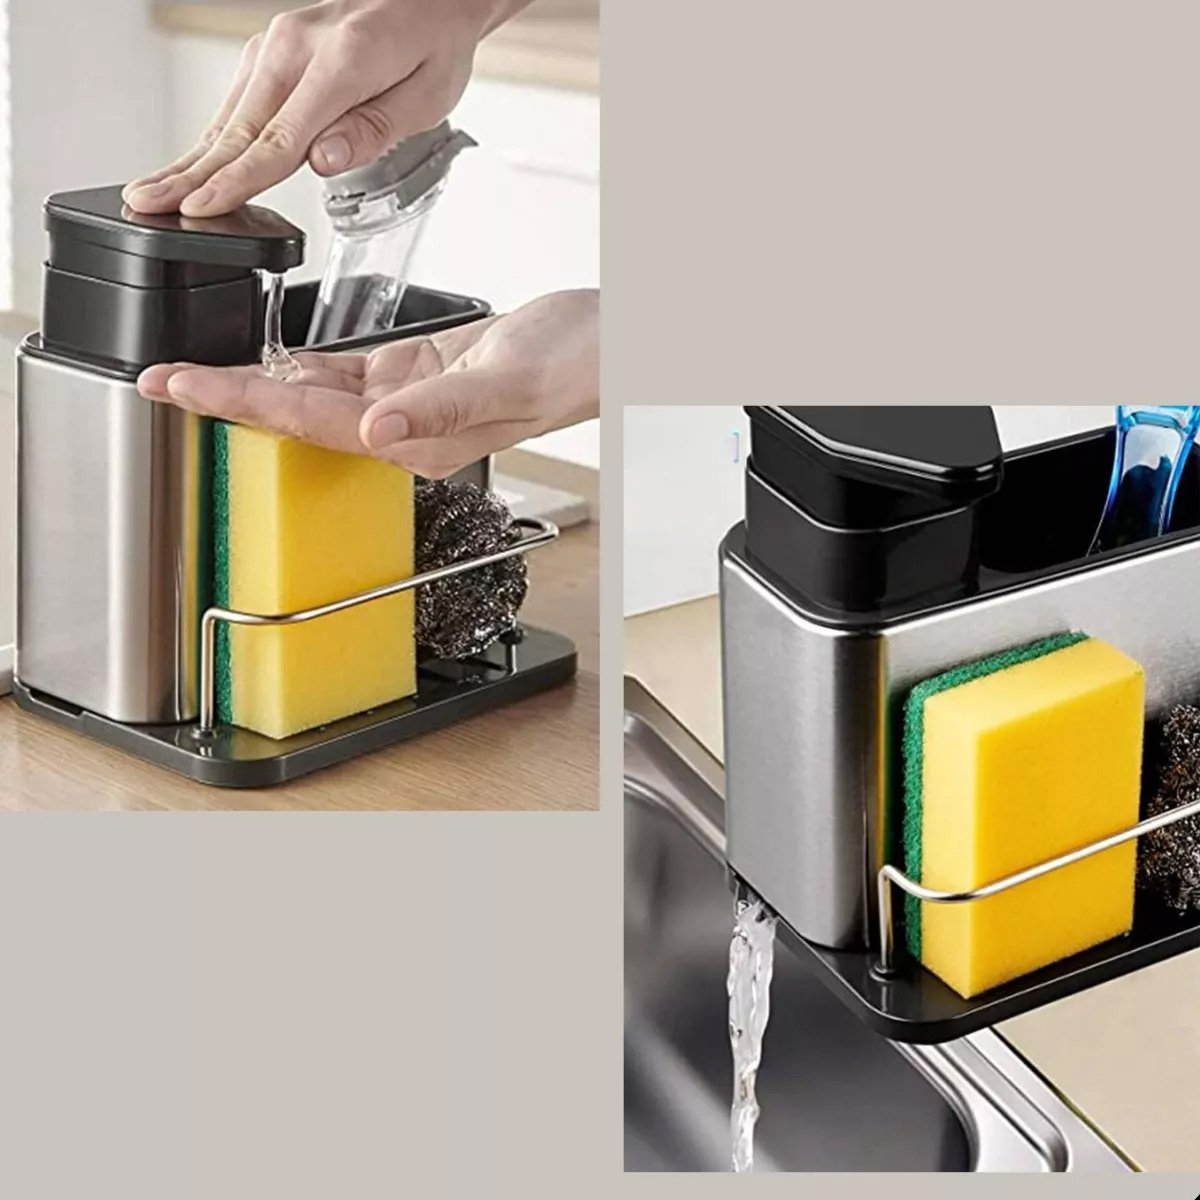 Dispenser Porta Detergente Escorredor Esponja 3 em 1 Inox Cozinha Pia Balcao Limpeza Higiene Escorre - 9